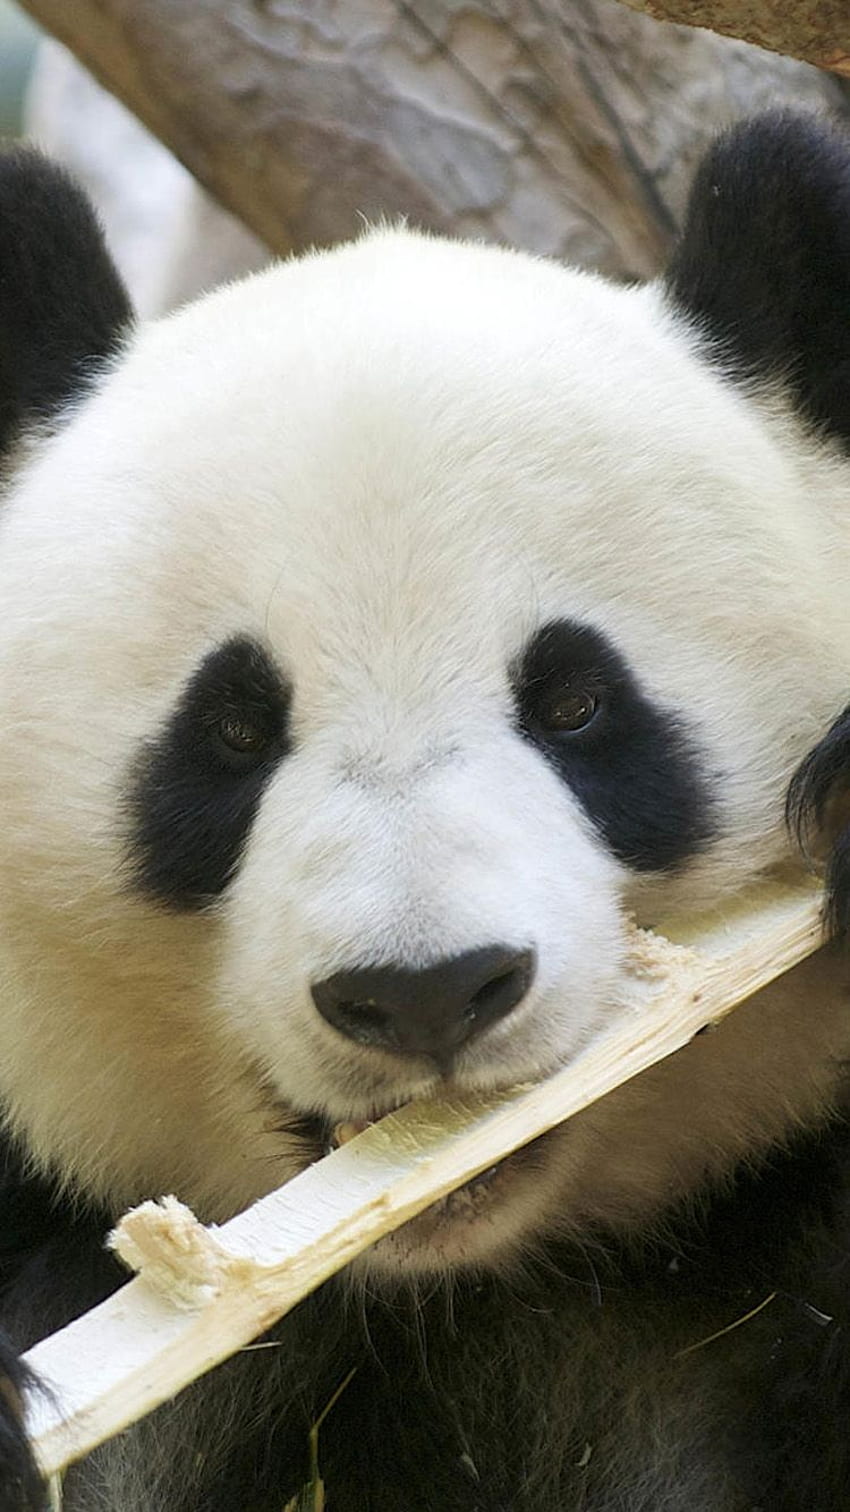 Cute panda eating bamboo iPhone 6 iPhone HD phone wallpaper